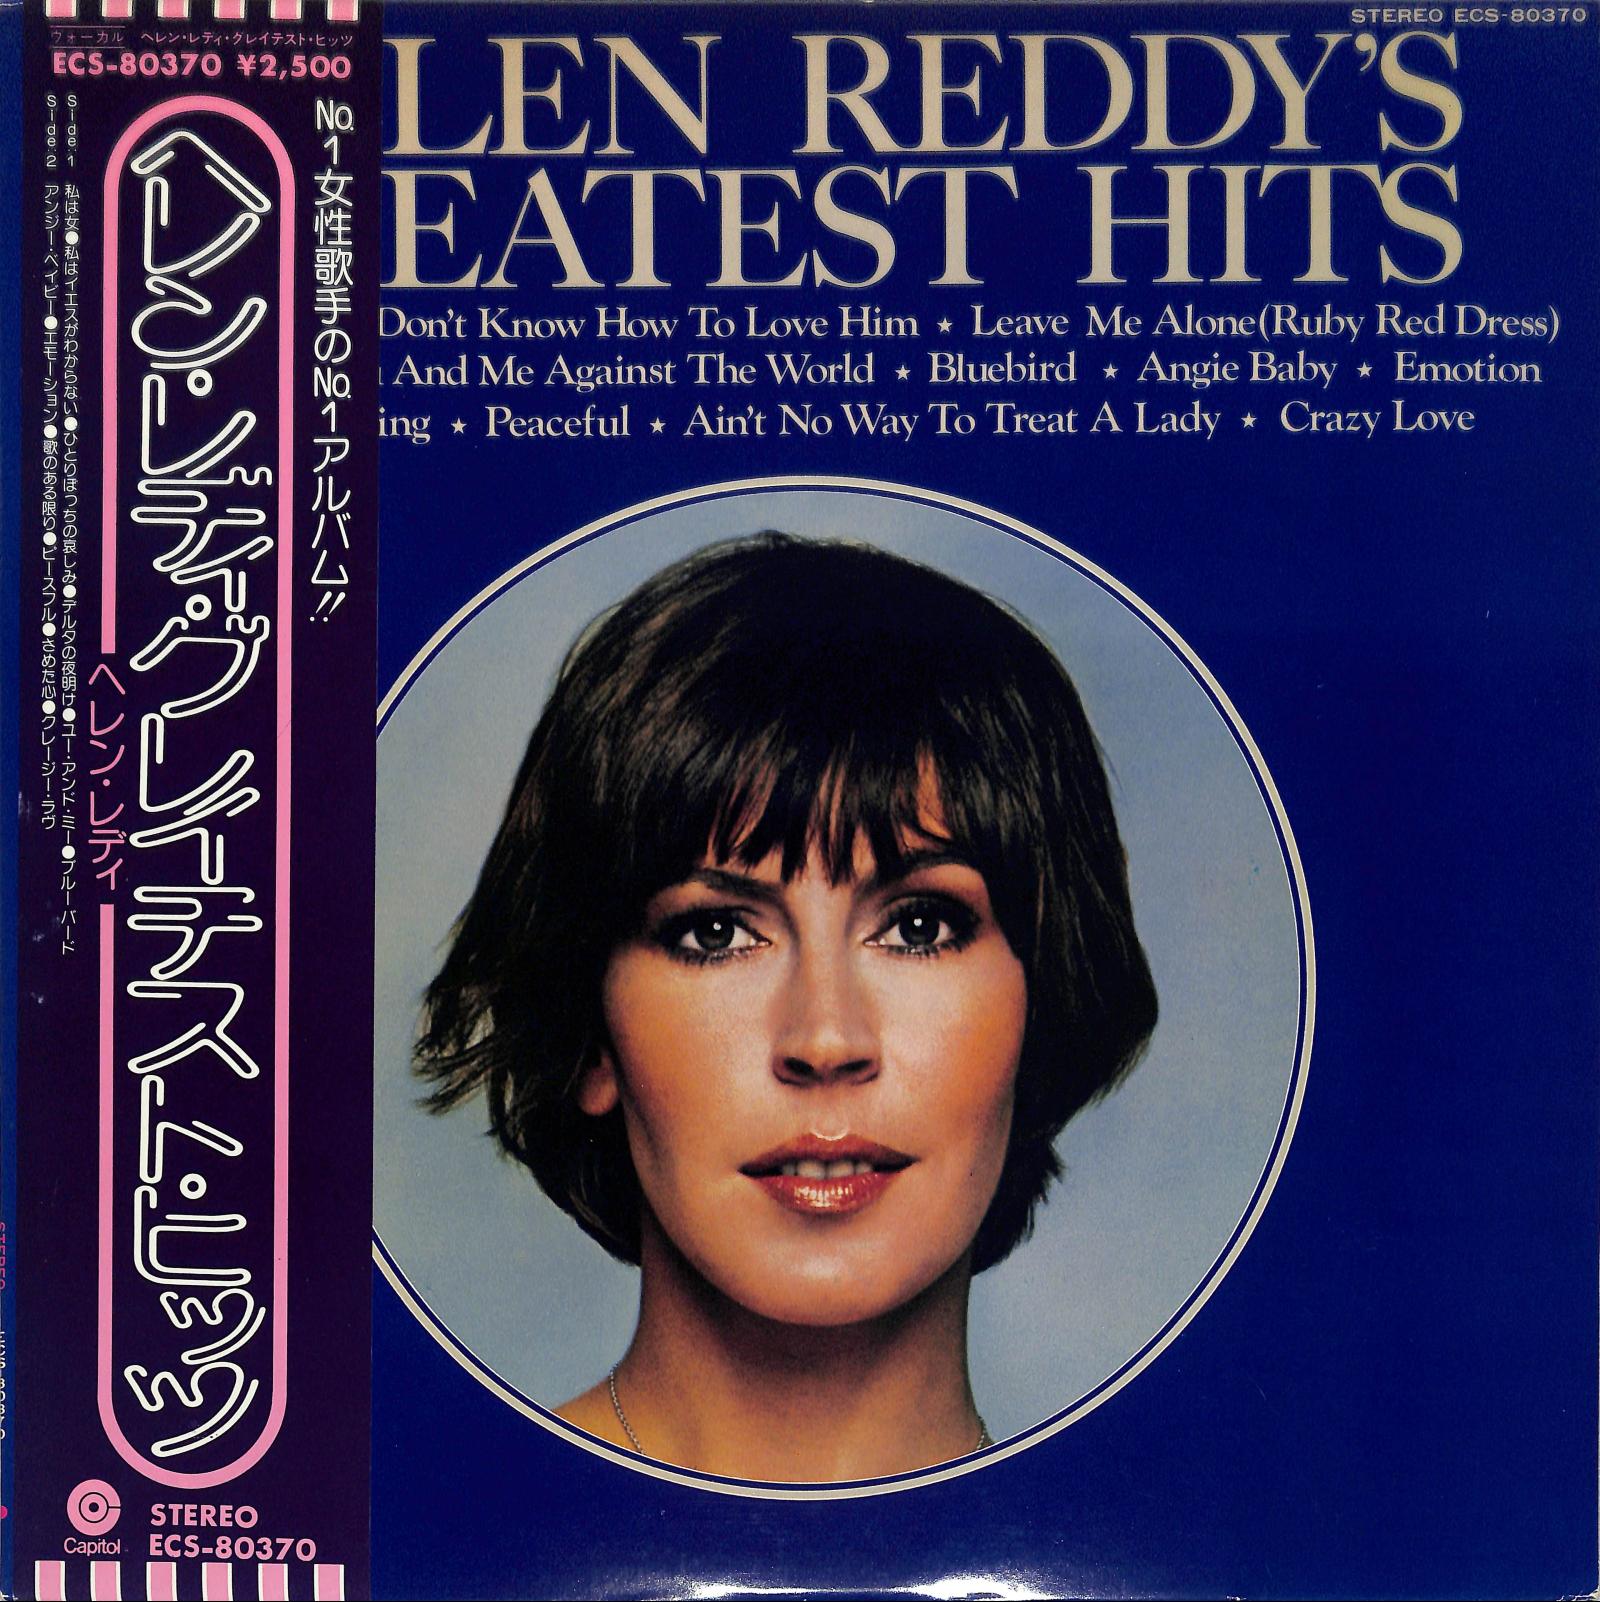 HELEN REDDY - Helen Reddy's Greatest Hits